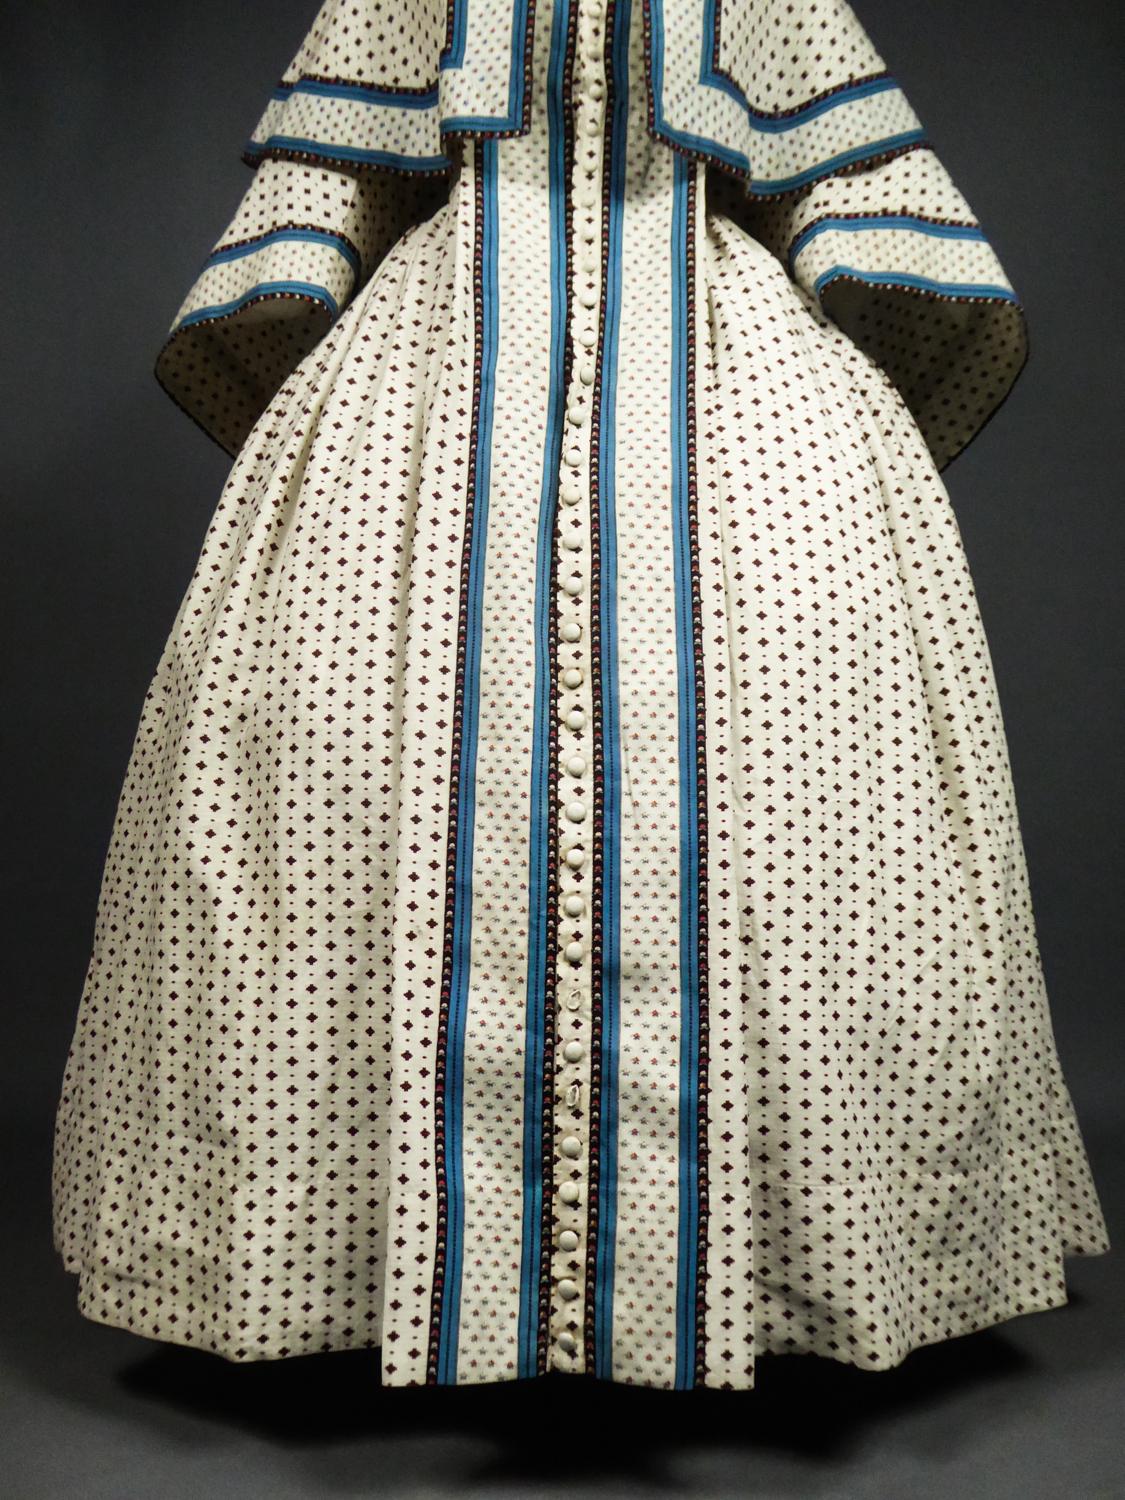 A Printed Cotton Crinoline Day Dress - France Napoleon III Period Circa 1865 8